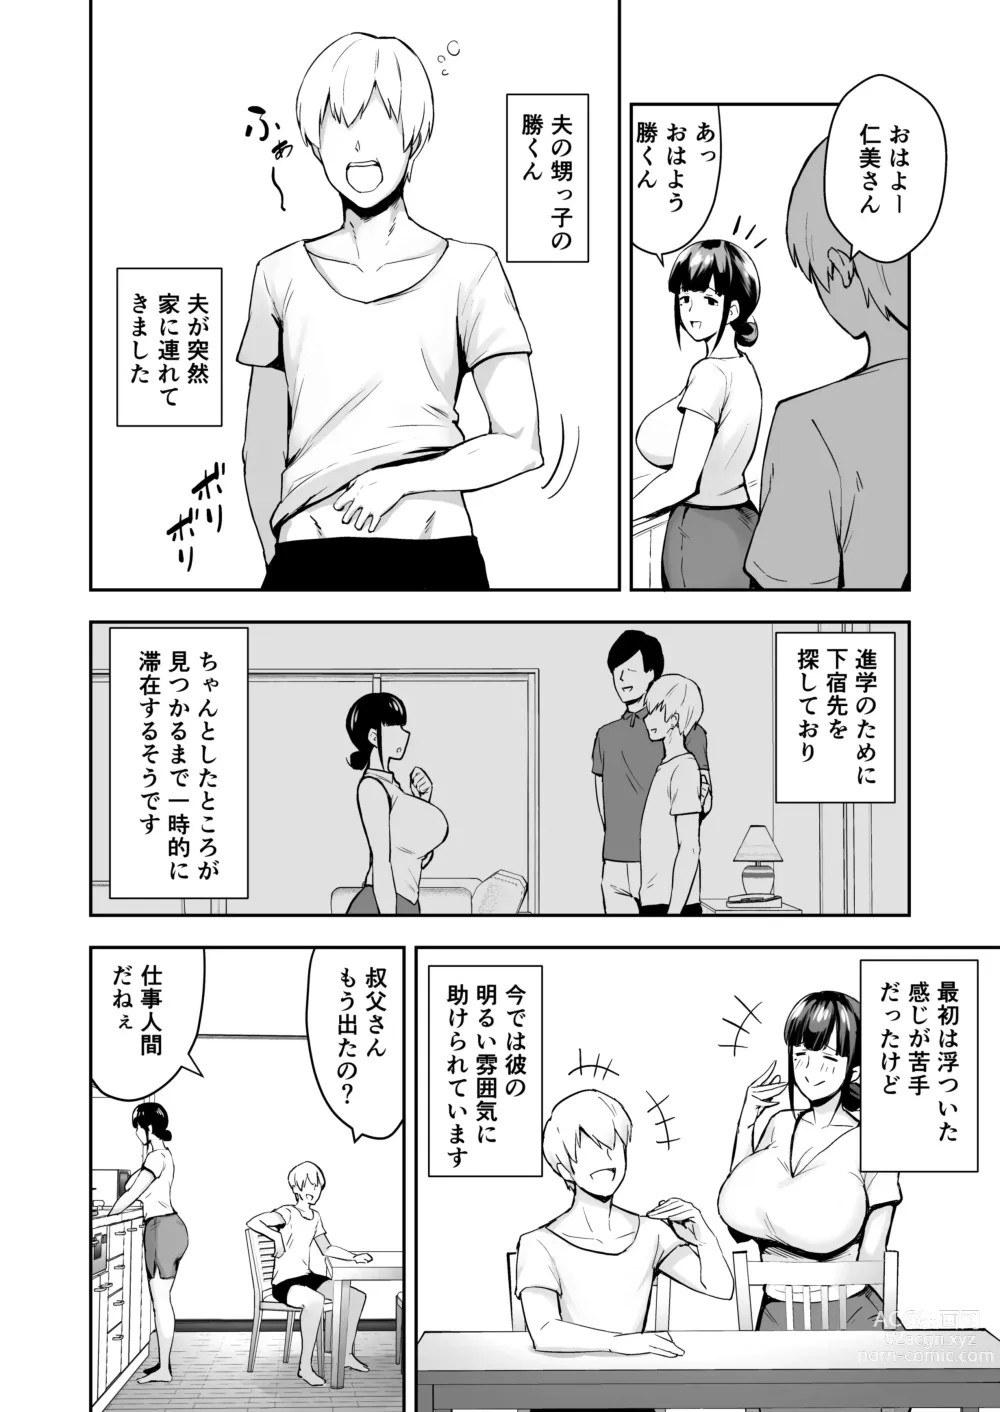 Page 4 of doujinshi Hitodzuma NTR